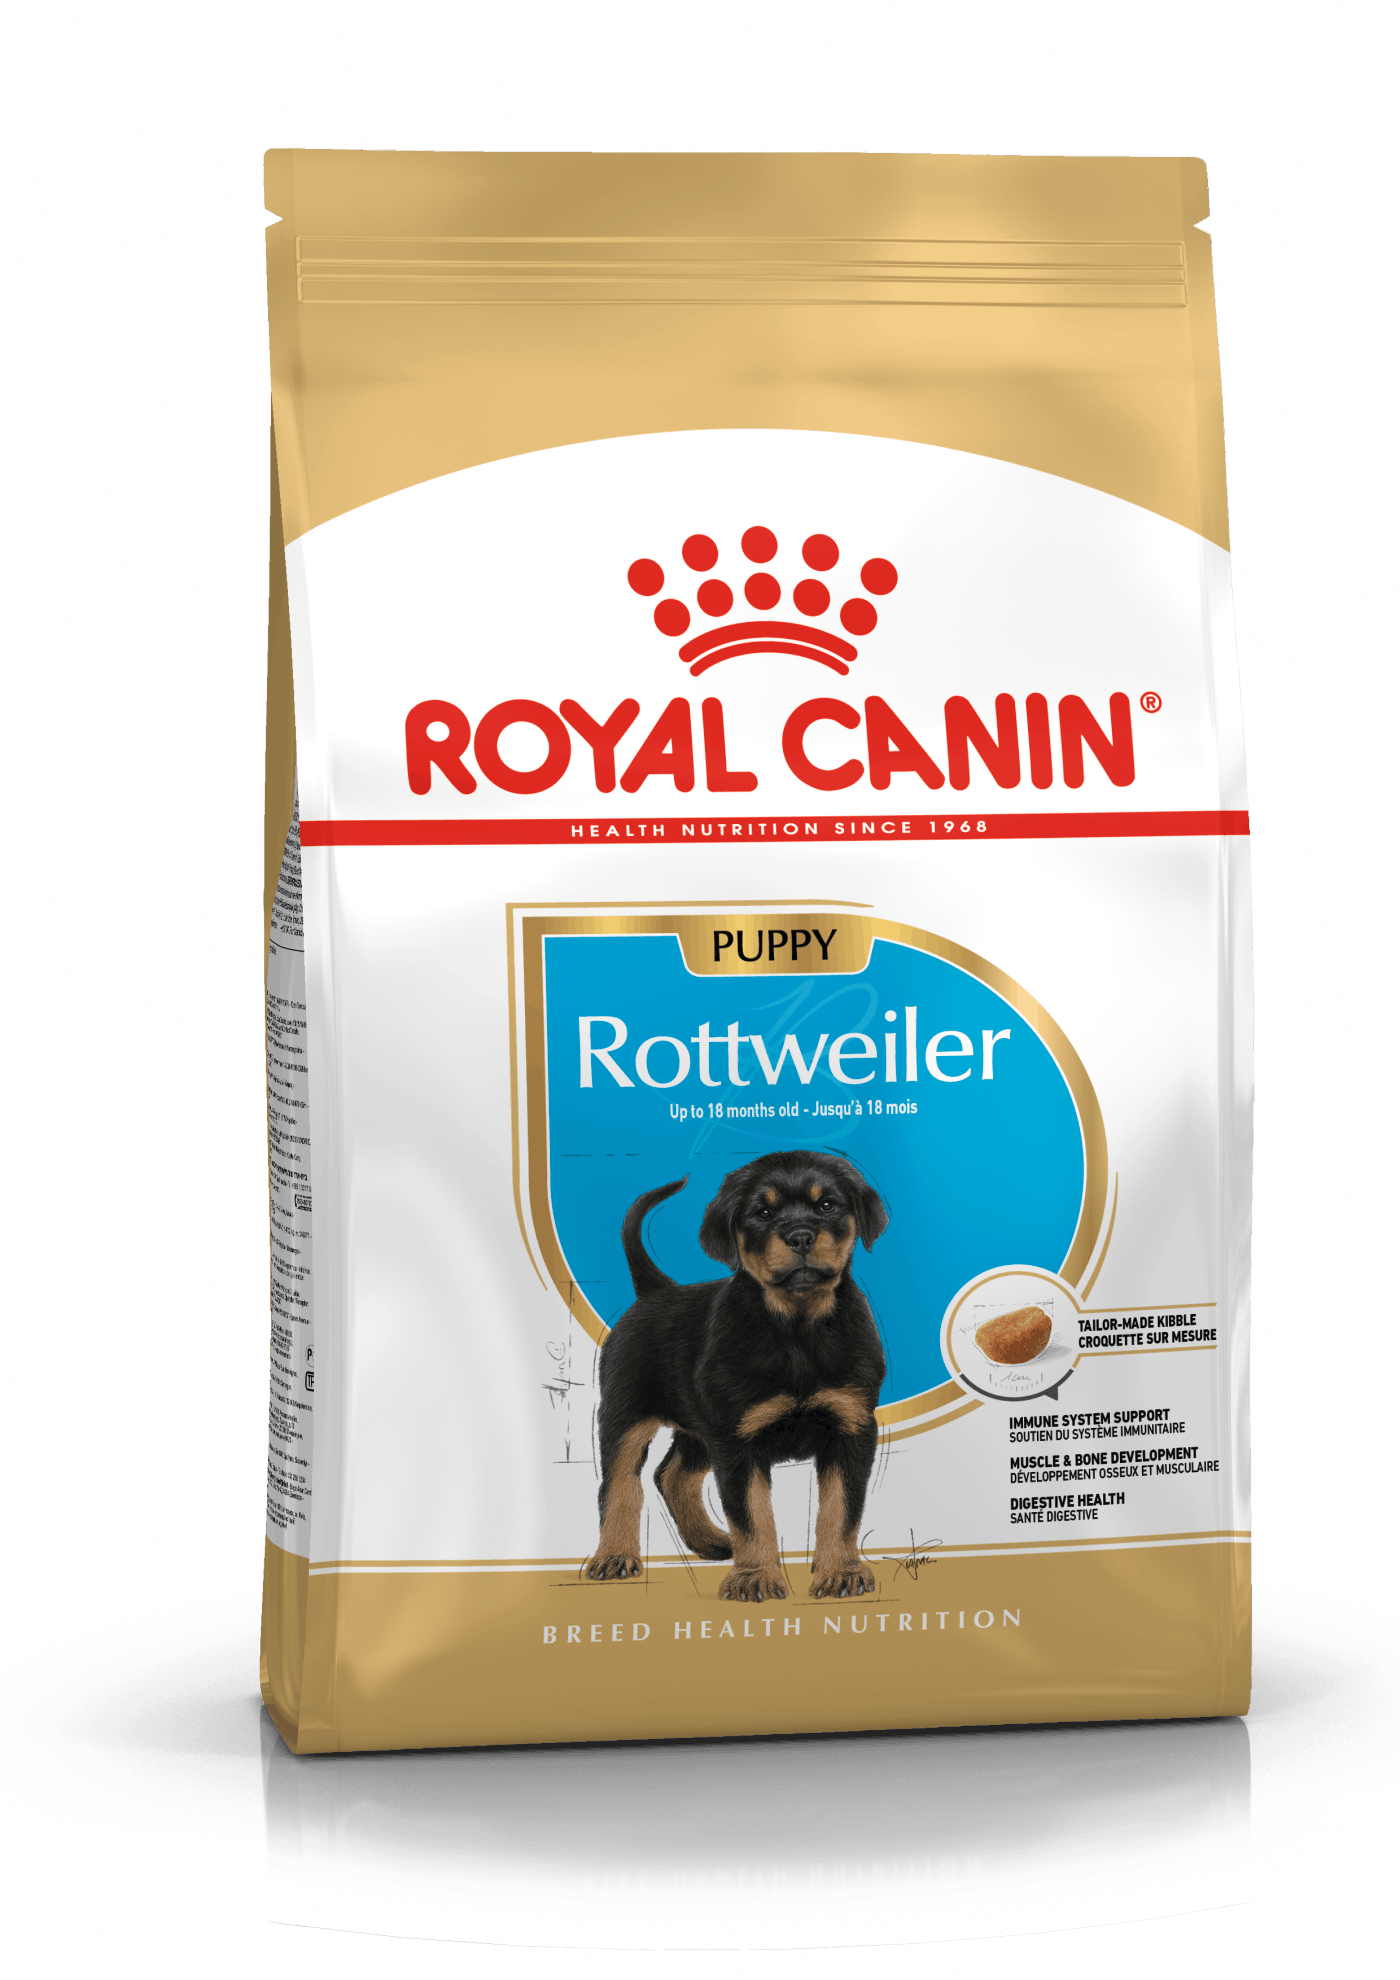 Se Royal Canin Rottweiler Puppy - op til 18 måneder (12kg) hos Alttilhundogkat.dk